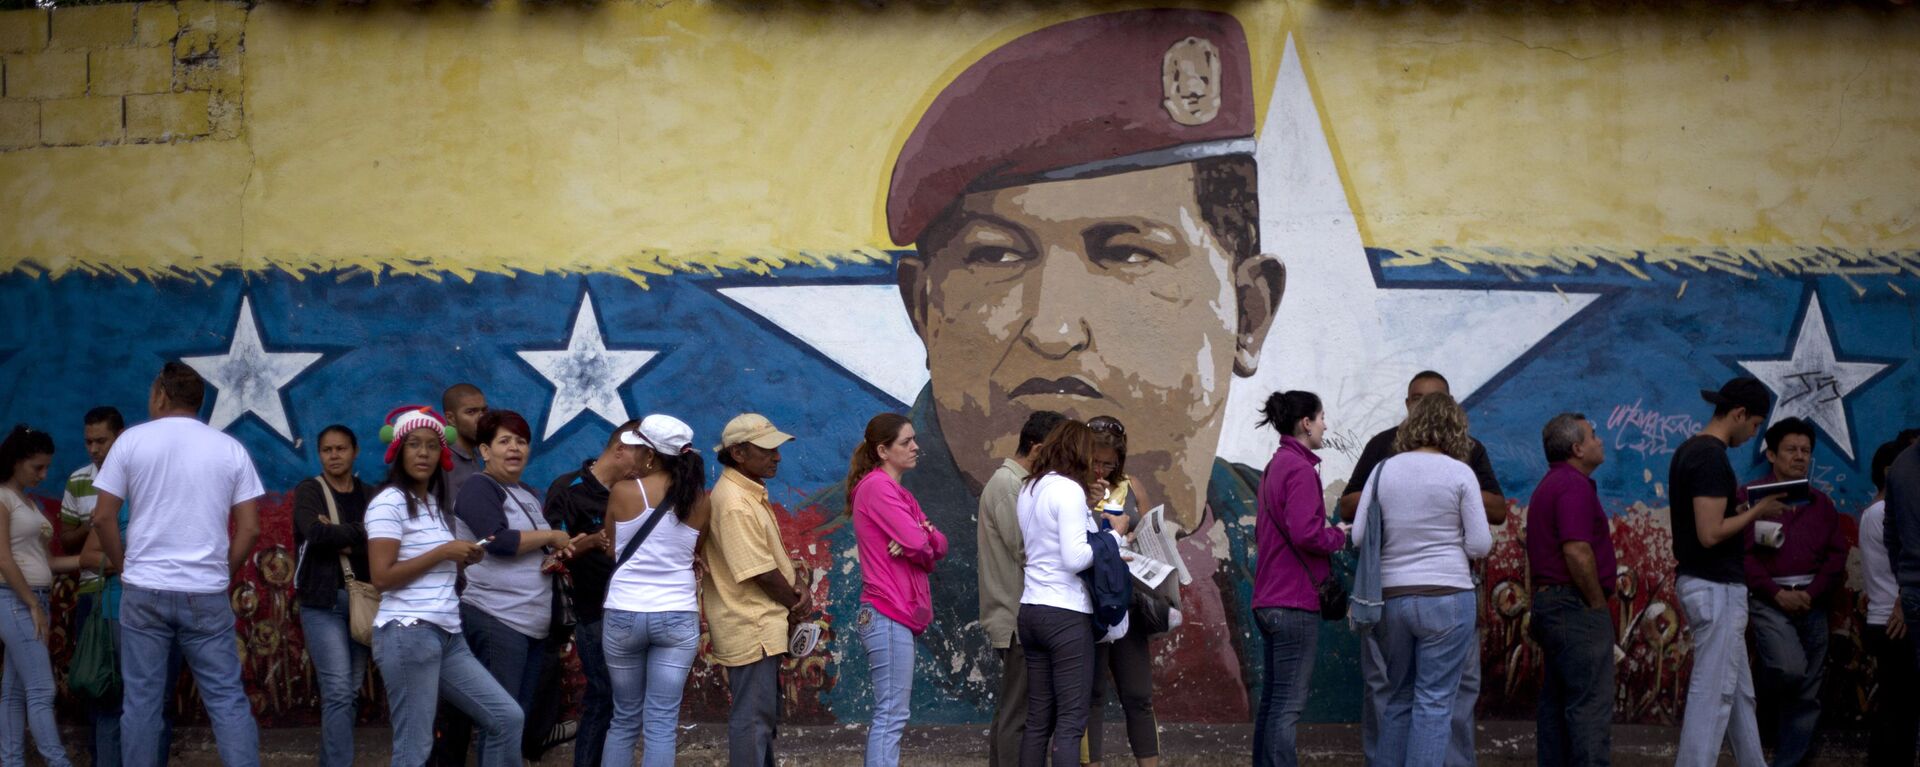 Venezuelanos fazem fila para participar das eleições em seu país em frente a muro com a imagem do ex-presidente Hugo Chávez - Sputnik Brasil, 1920, 17.04.2024